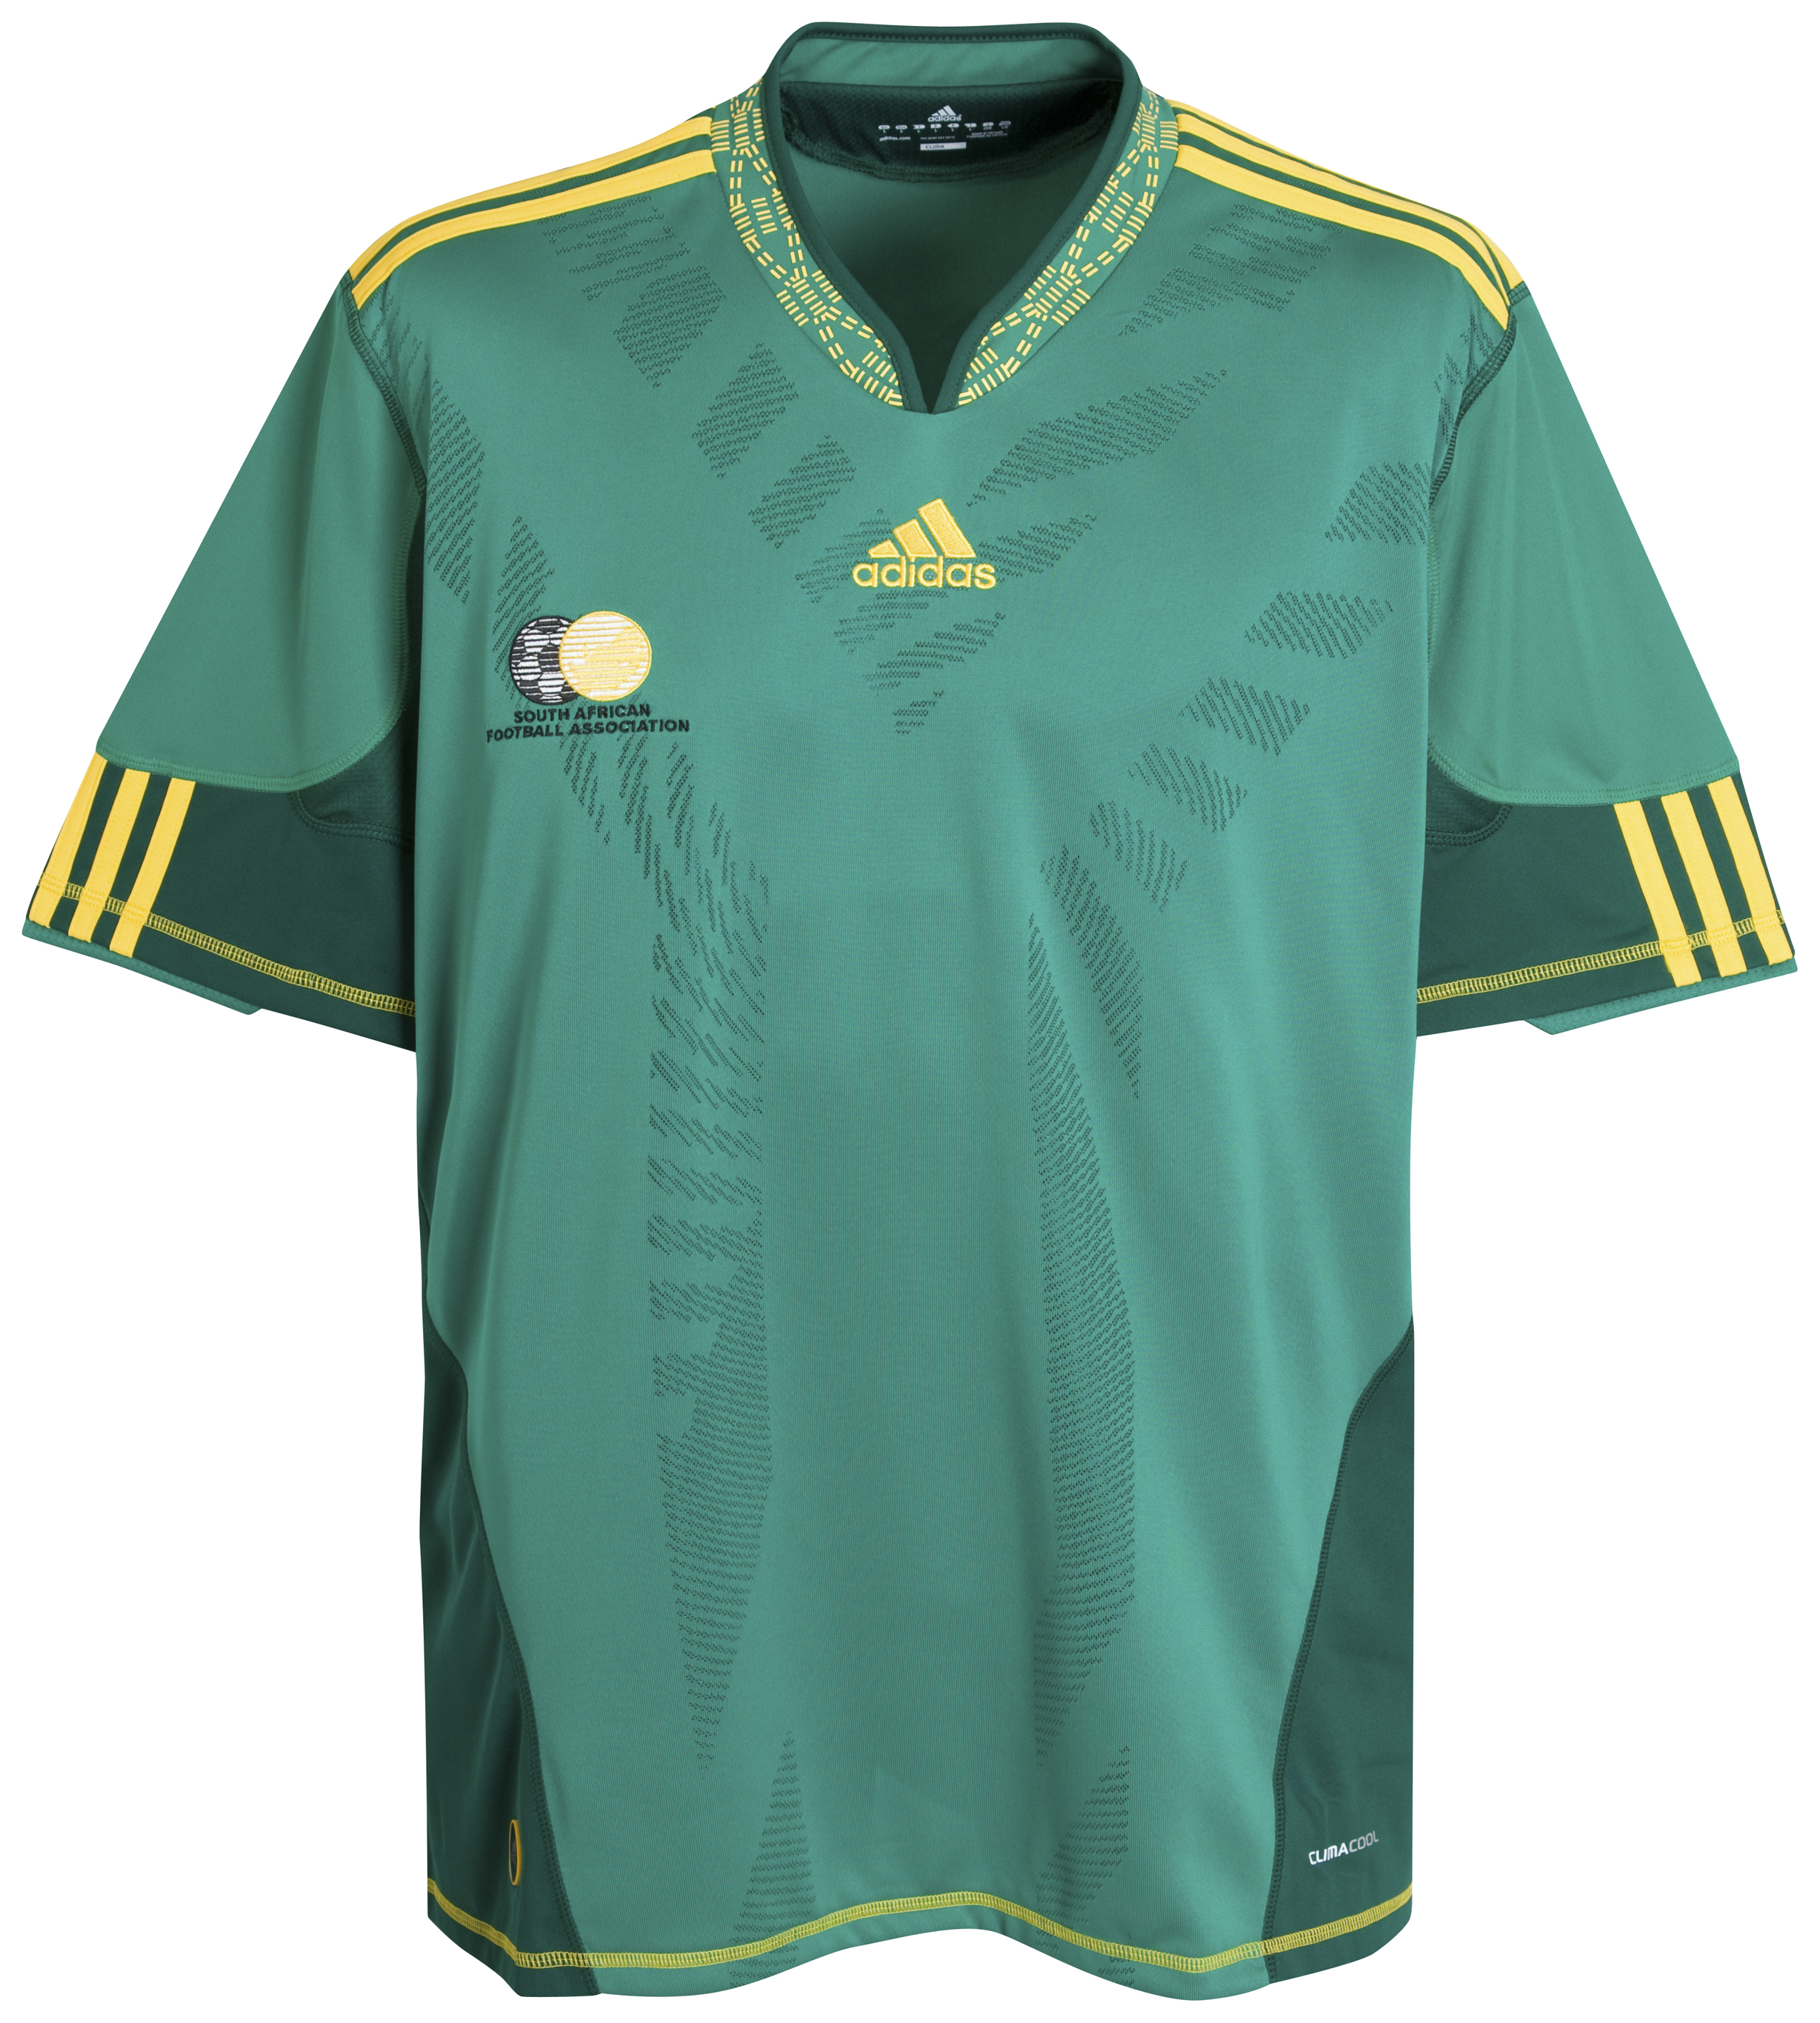 ملابس المنتخبات لكأس العالم ‎(2010)‎ Kb-66945